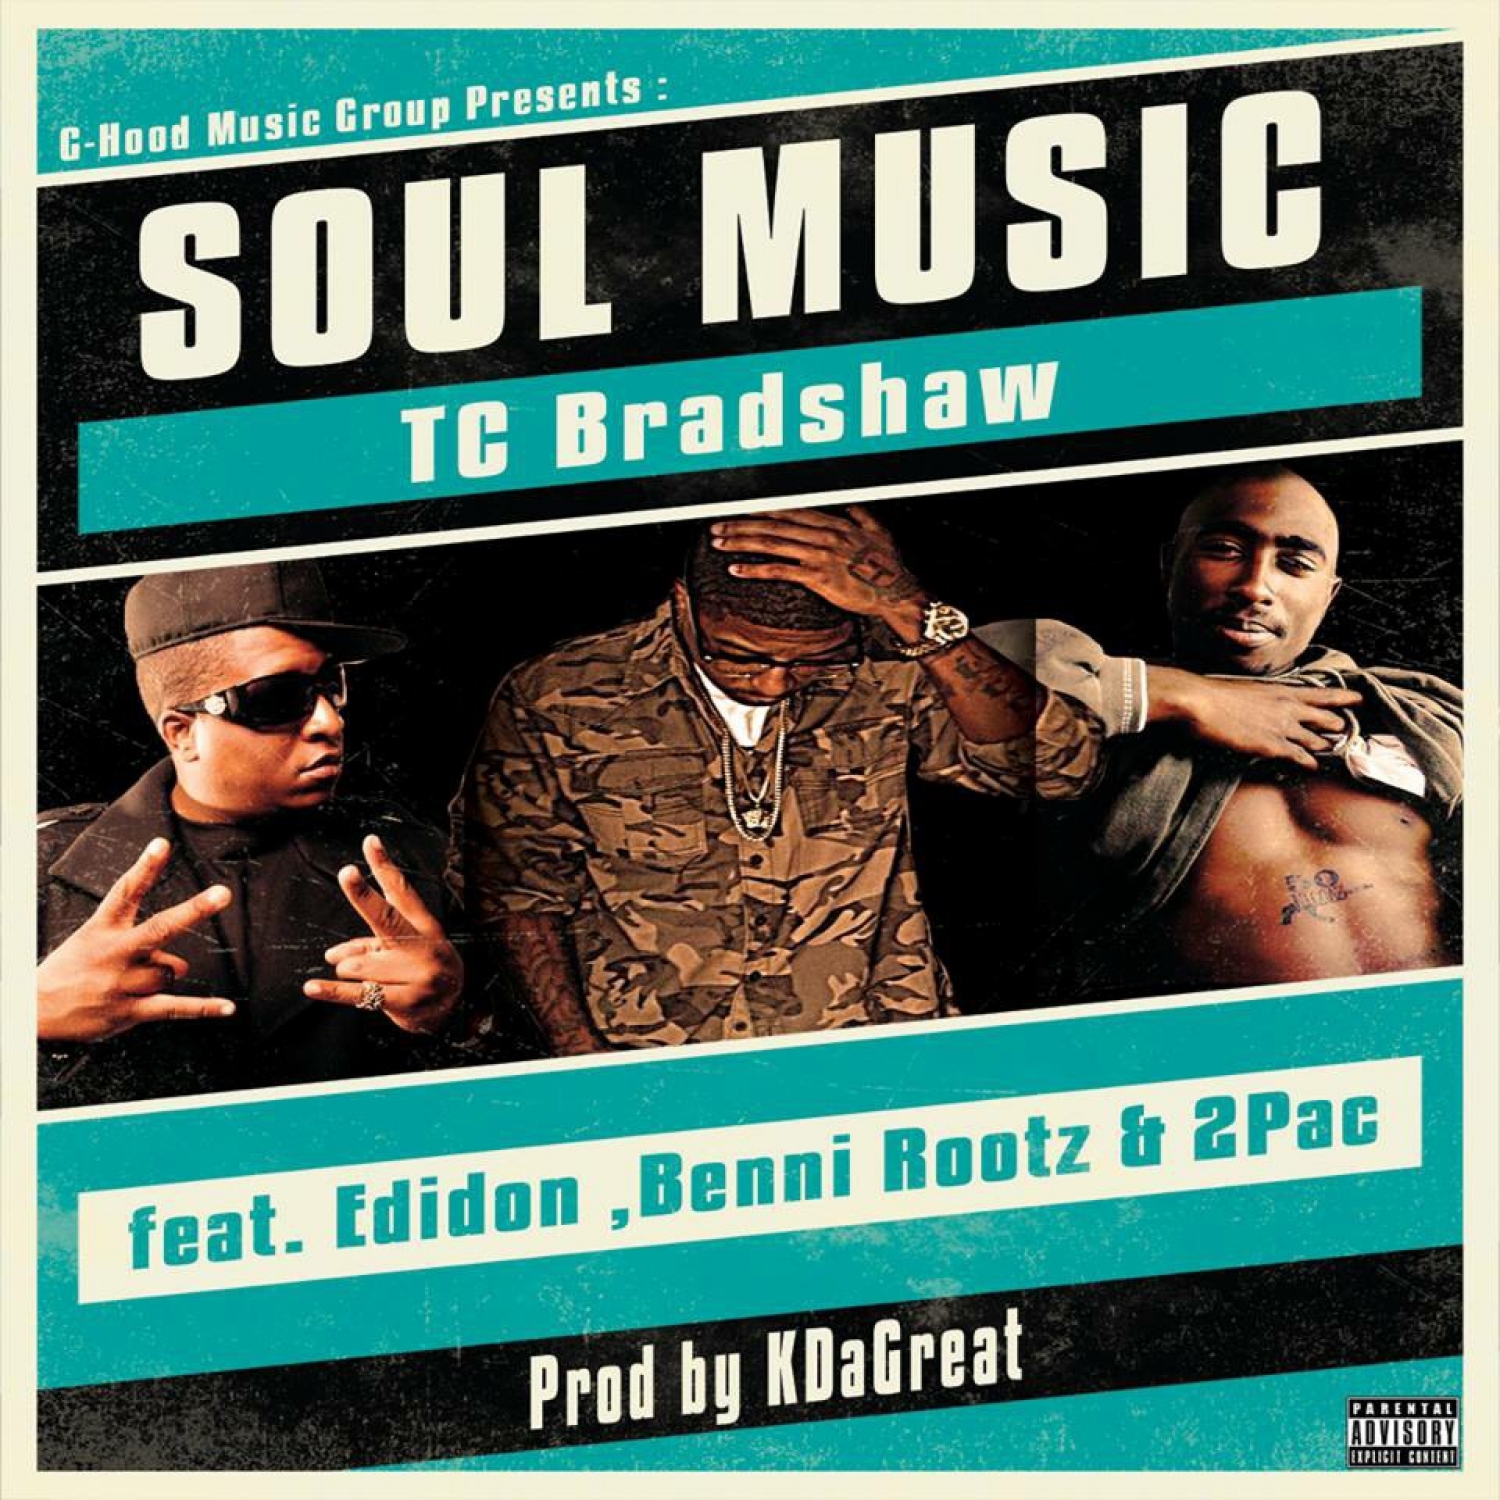 Soul Music (feat. Edidon & Benni Rootz) - Single